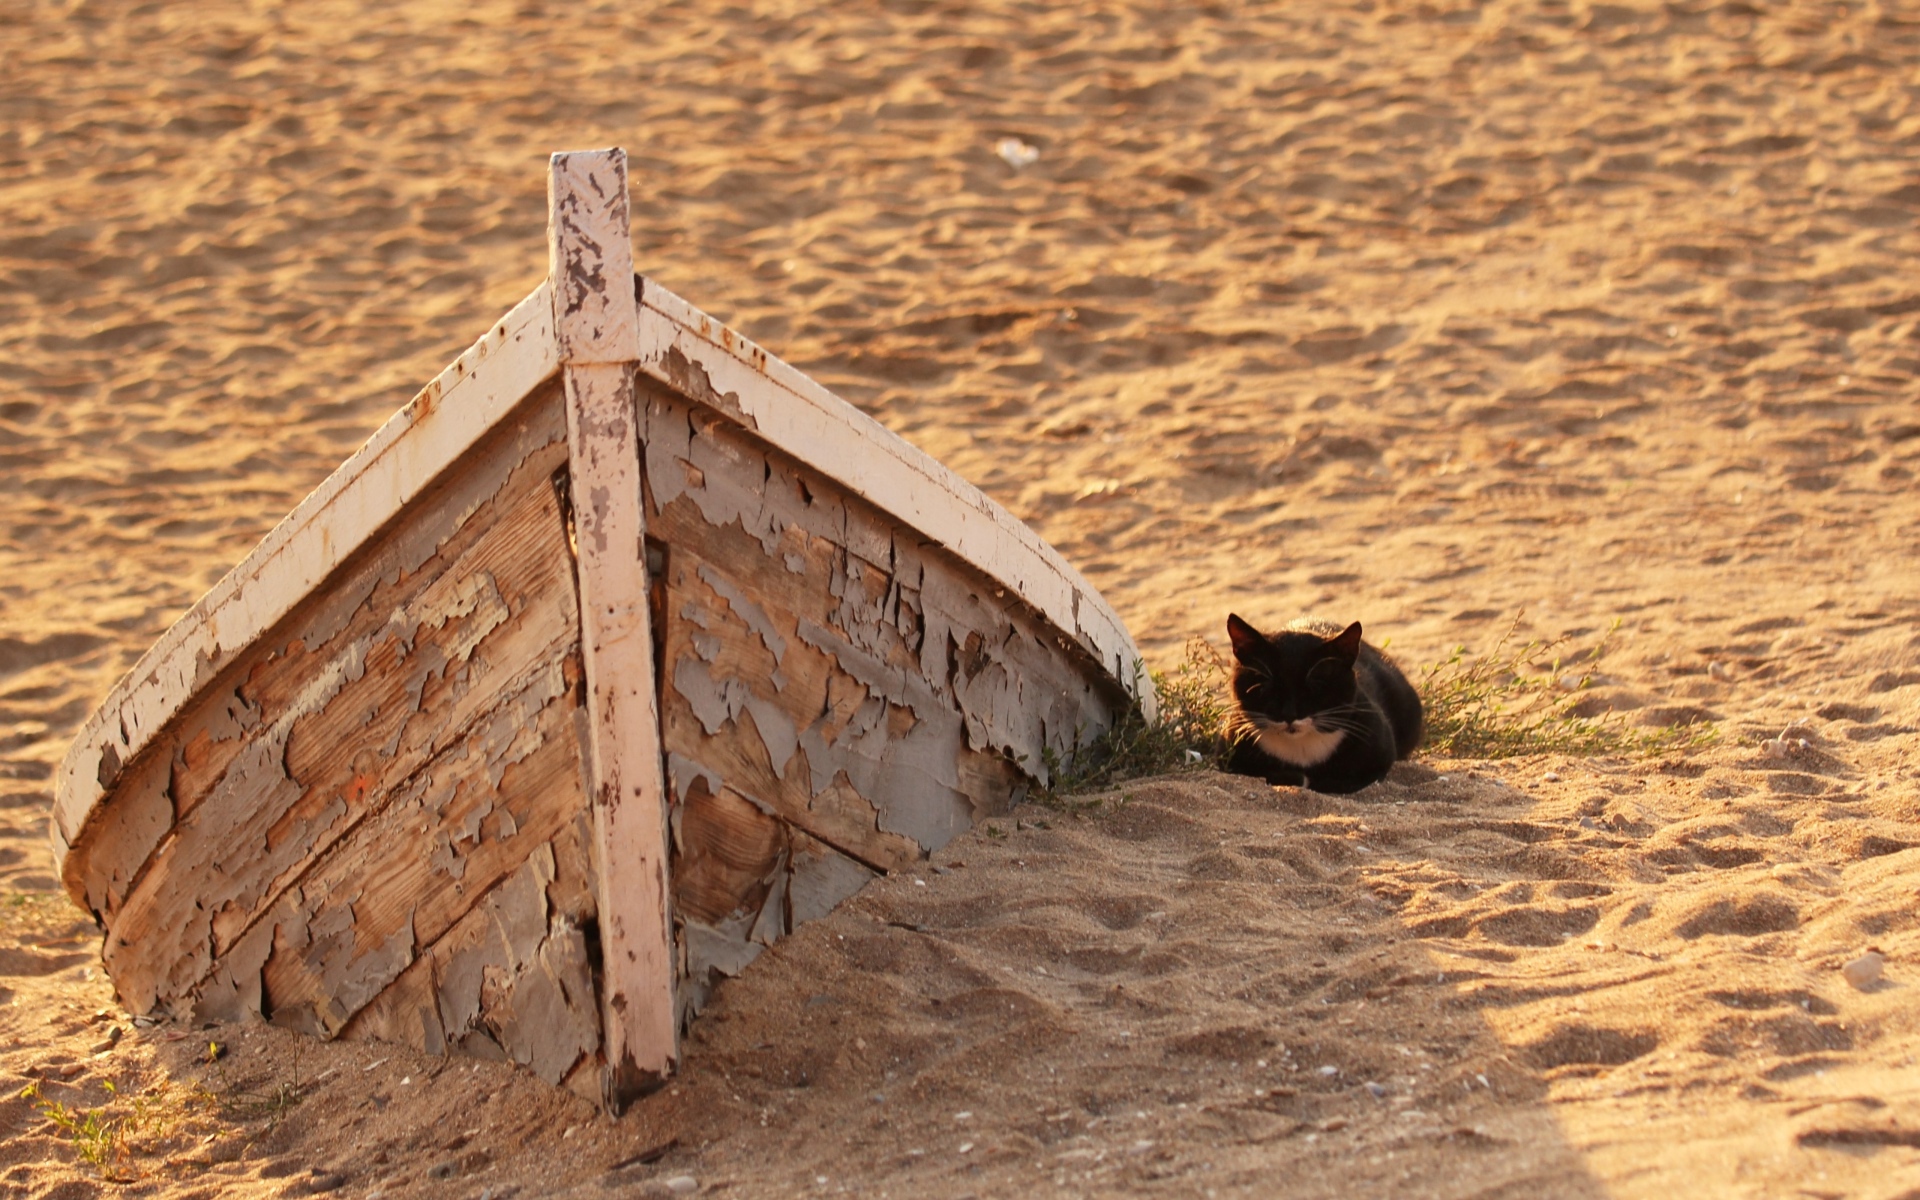 Маленький черный котенок на песке у старой лодки